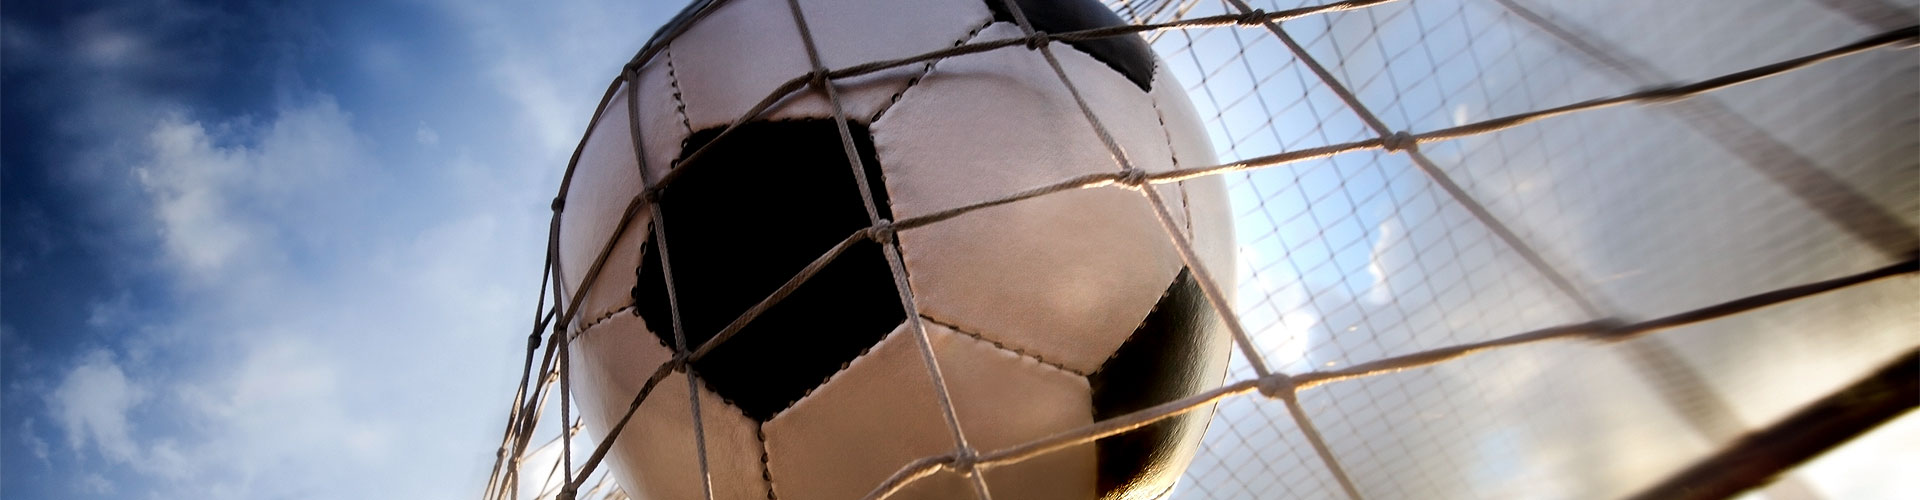 Ver la Eurocopa 2020 de fútbol en vivo en Guardiola de Berguedà